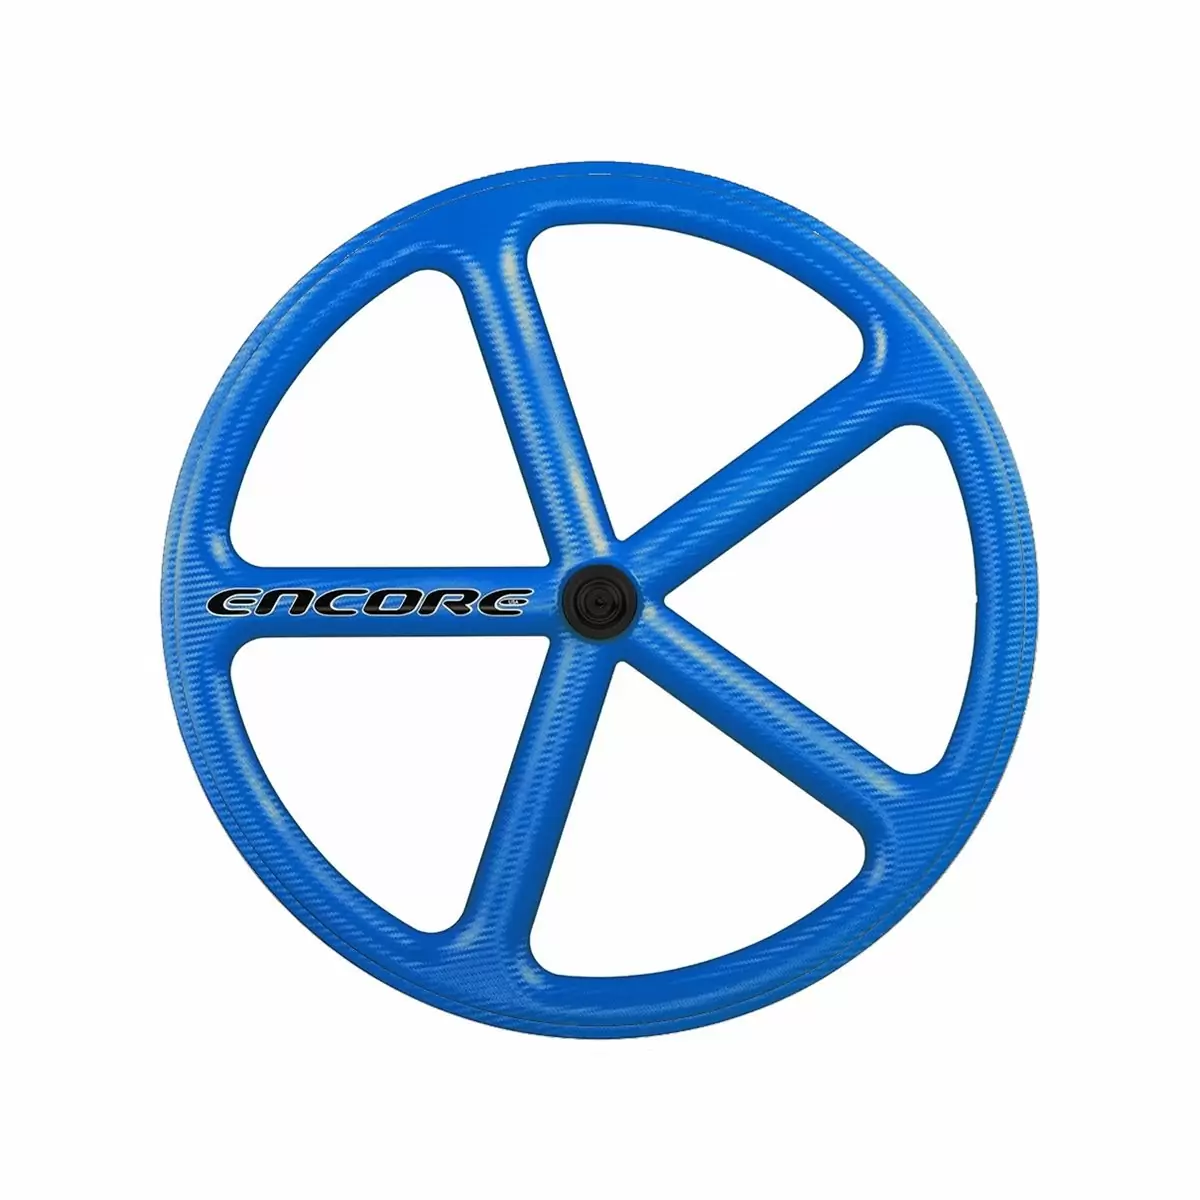 roue arrière 700c piste 5 rayons tissage carbone bleu nmsw - image